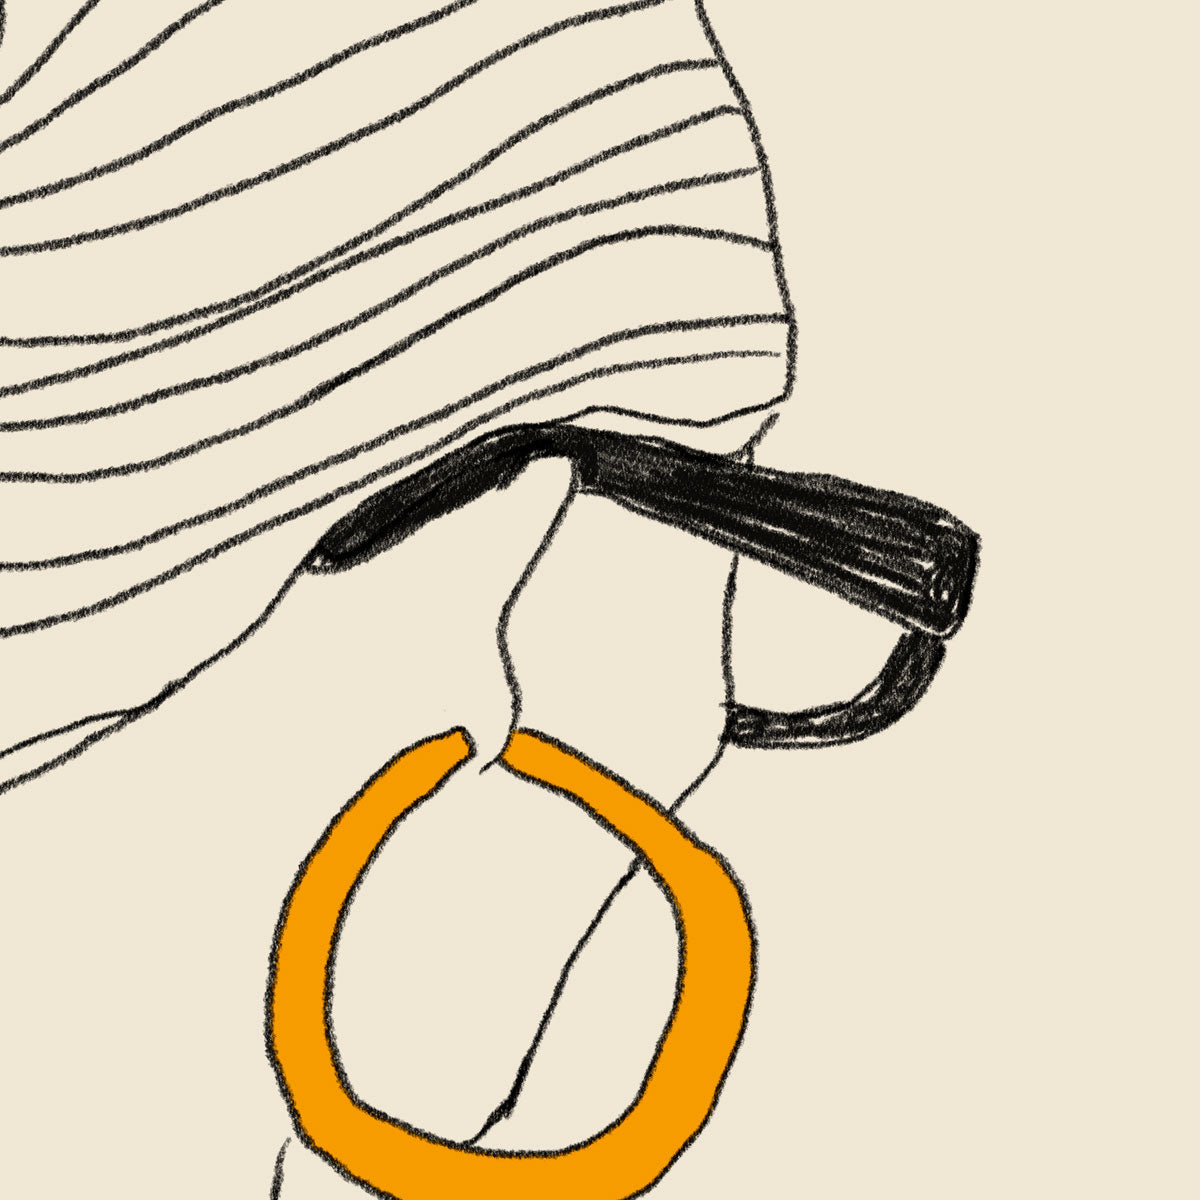 Girl Golden Earring Art Poster